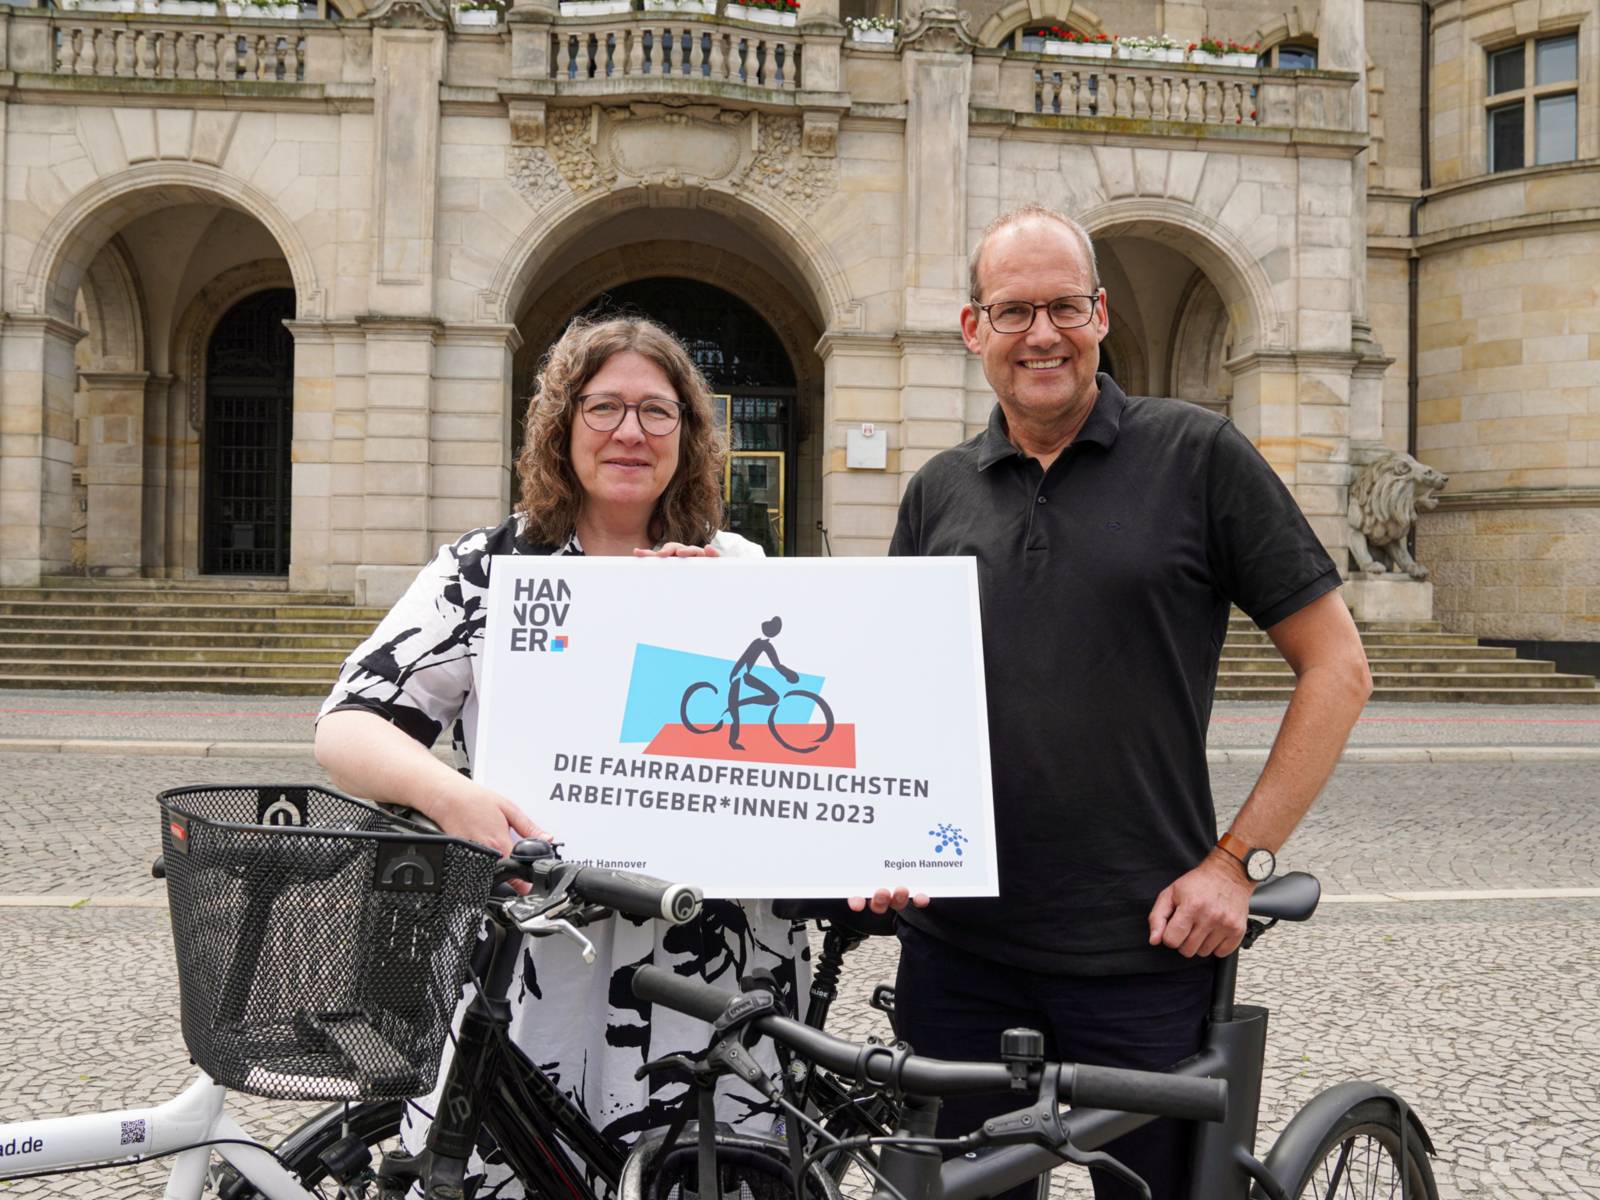 Zwei Personen an einem Fahrrad. Sie halten ein Schild, auf dem "Die Fahrradfreundlichsten Arbeitgeber*innen 2023" steht.